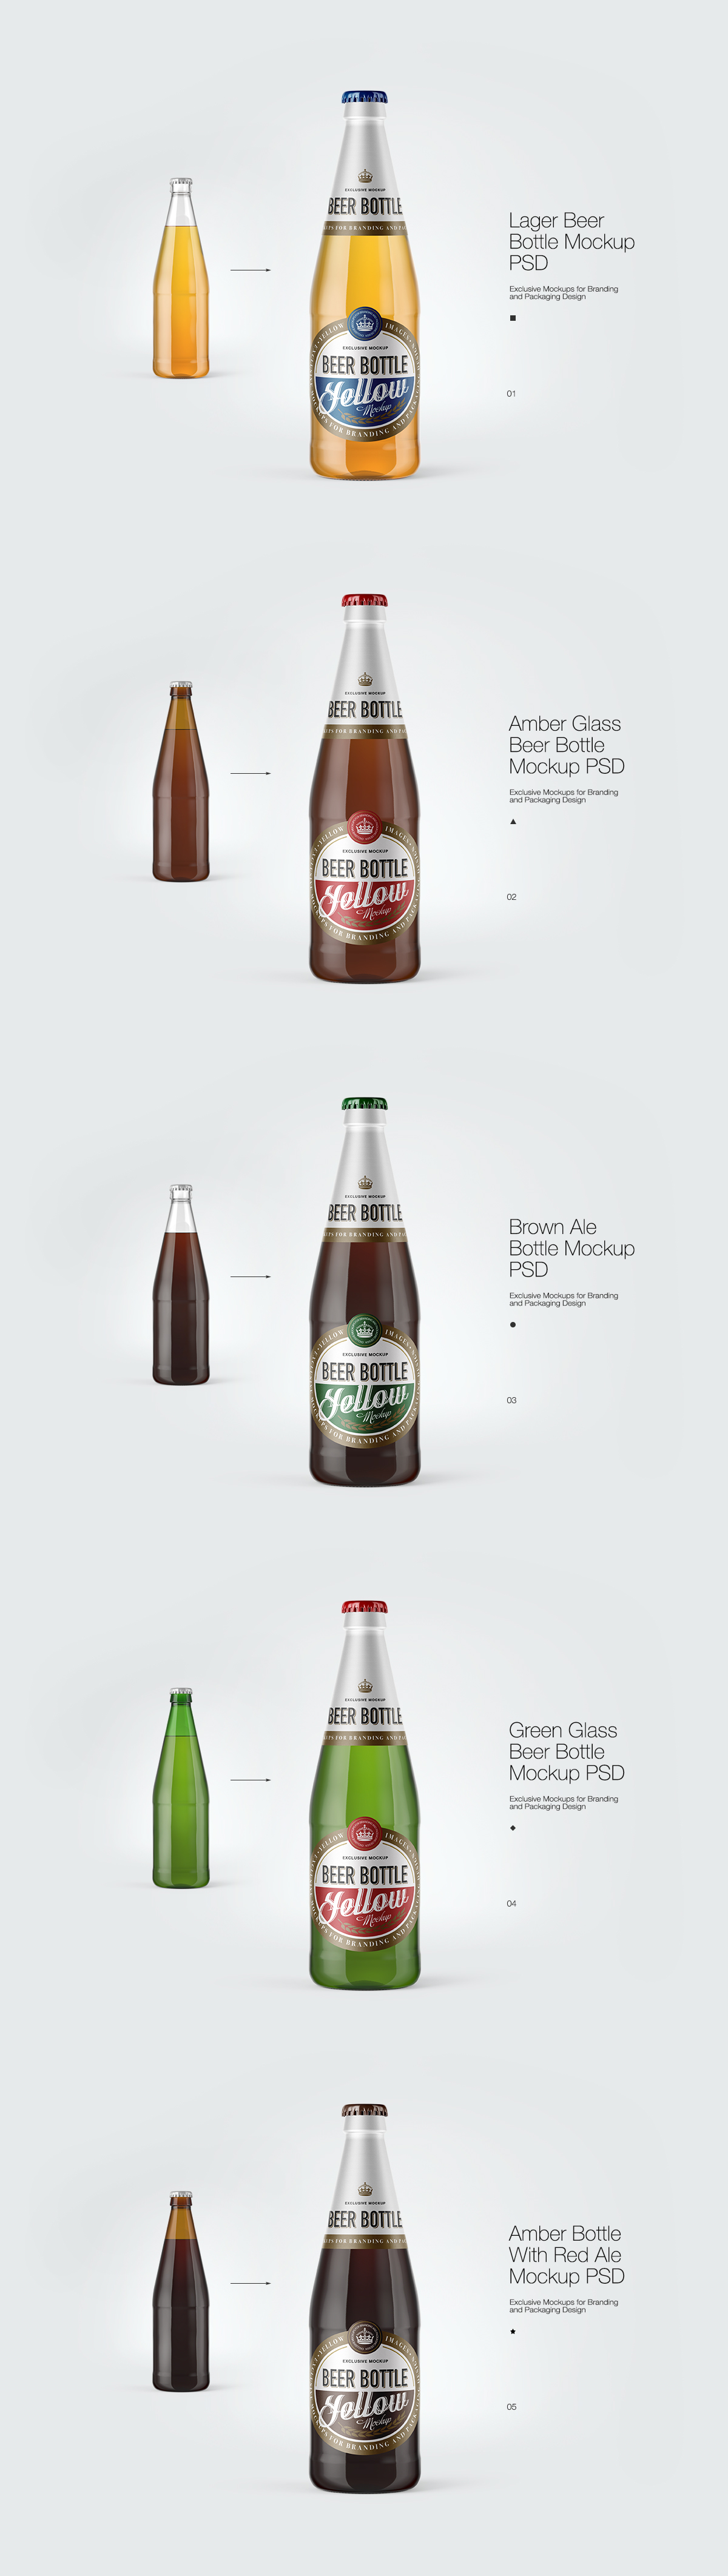 Download 5 Beer Bottles Psd Mockups On Behance PSD Mockup Templates